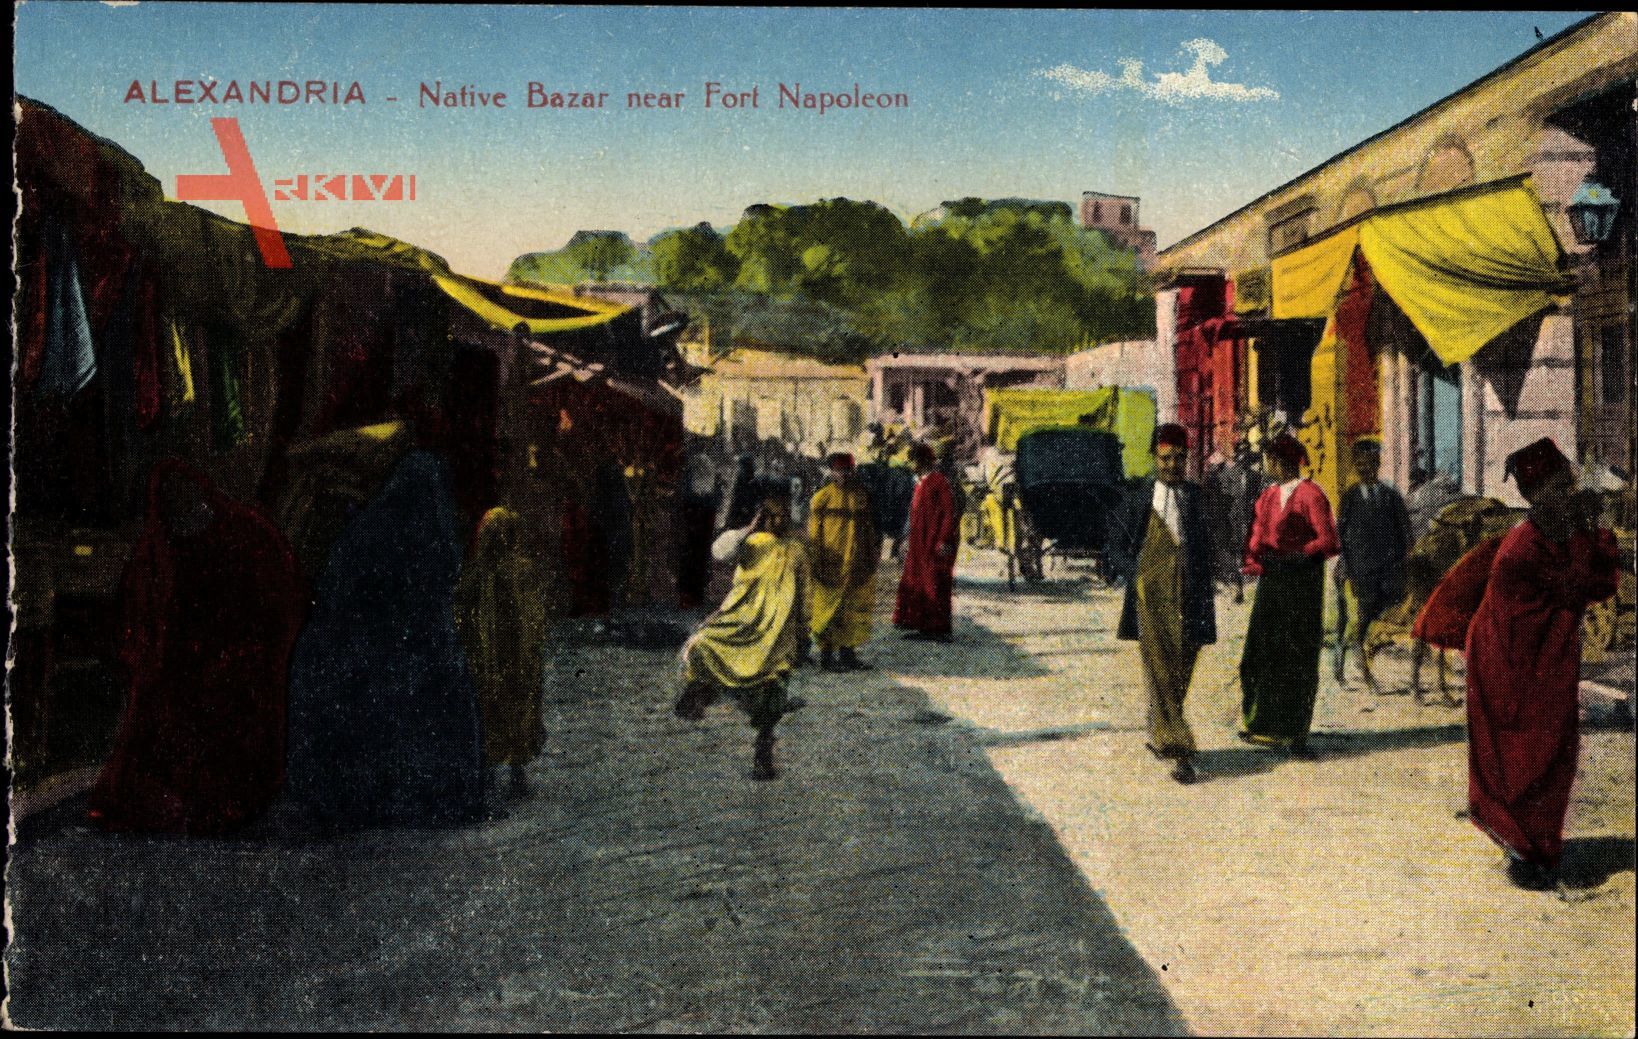 Alexandria Ägypten, Native Bazar near Fort Napoleon, Markt, Einheimische